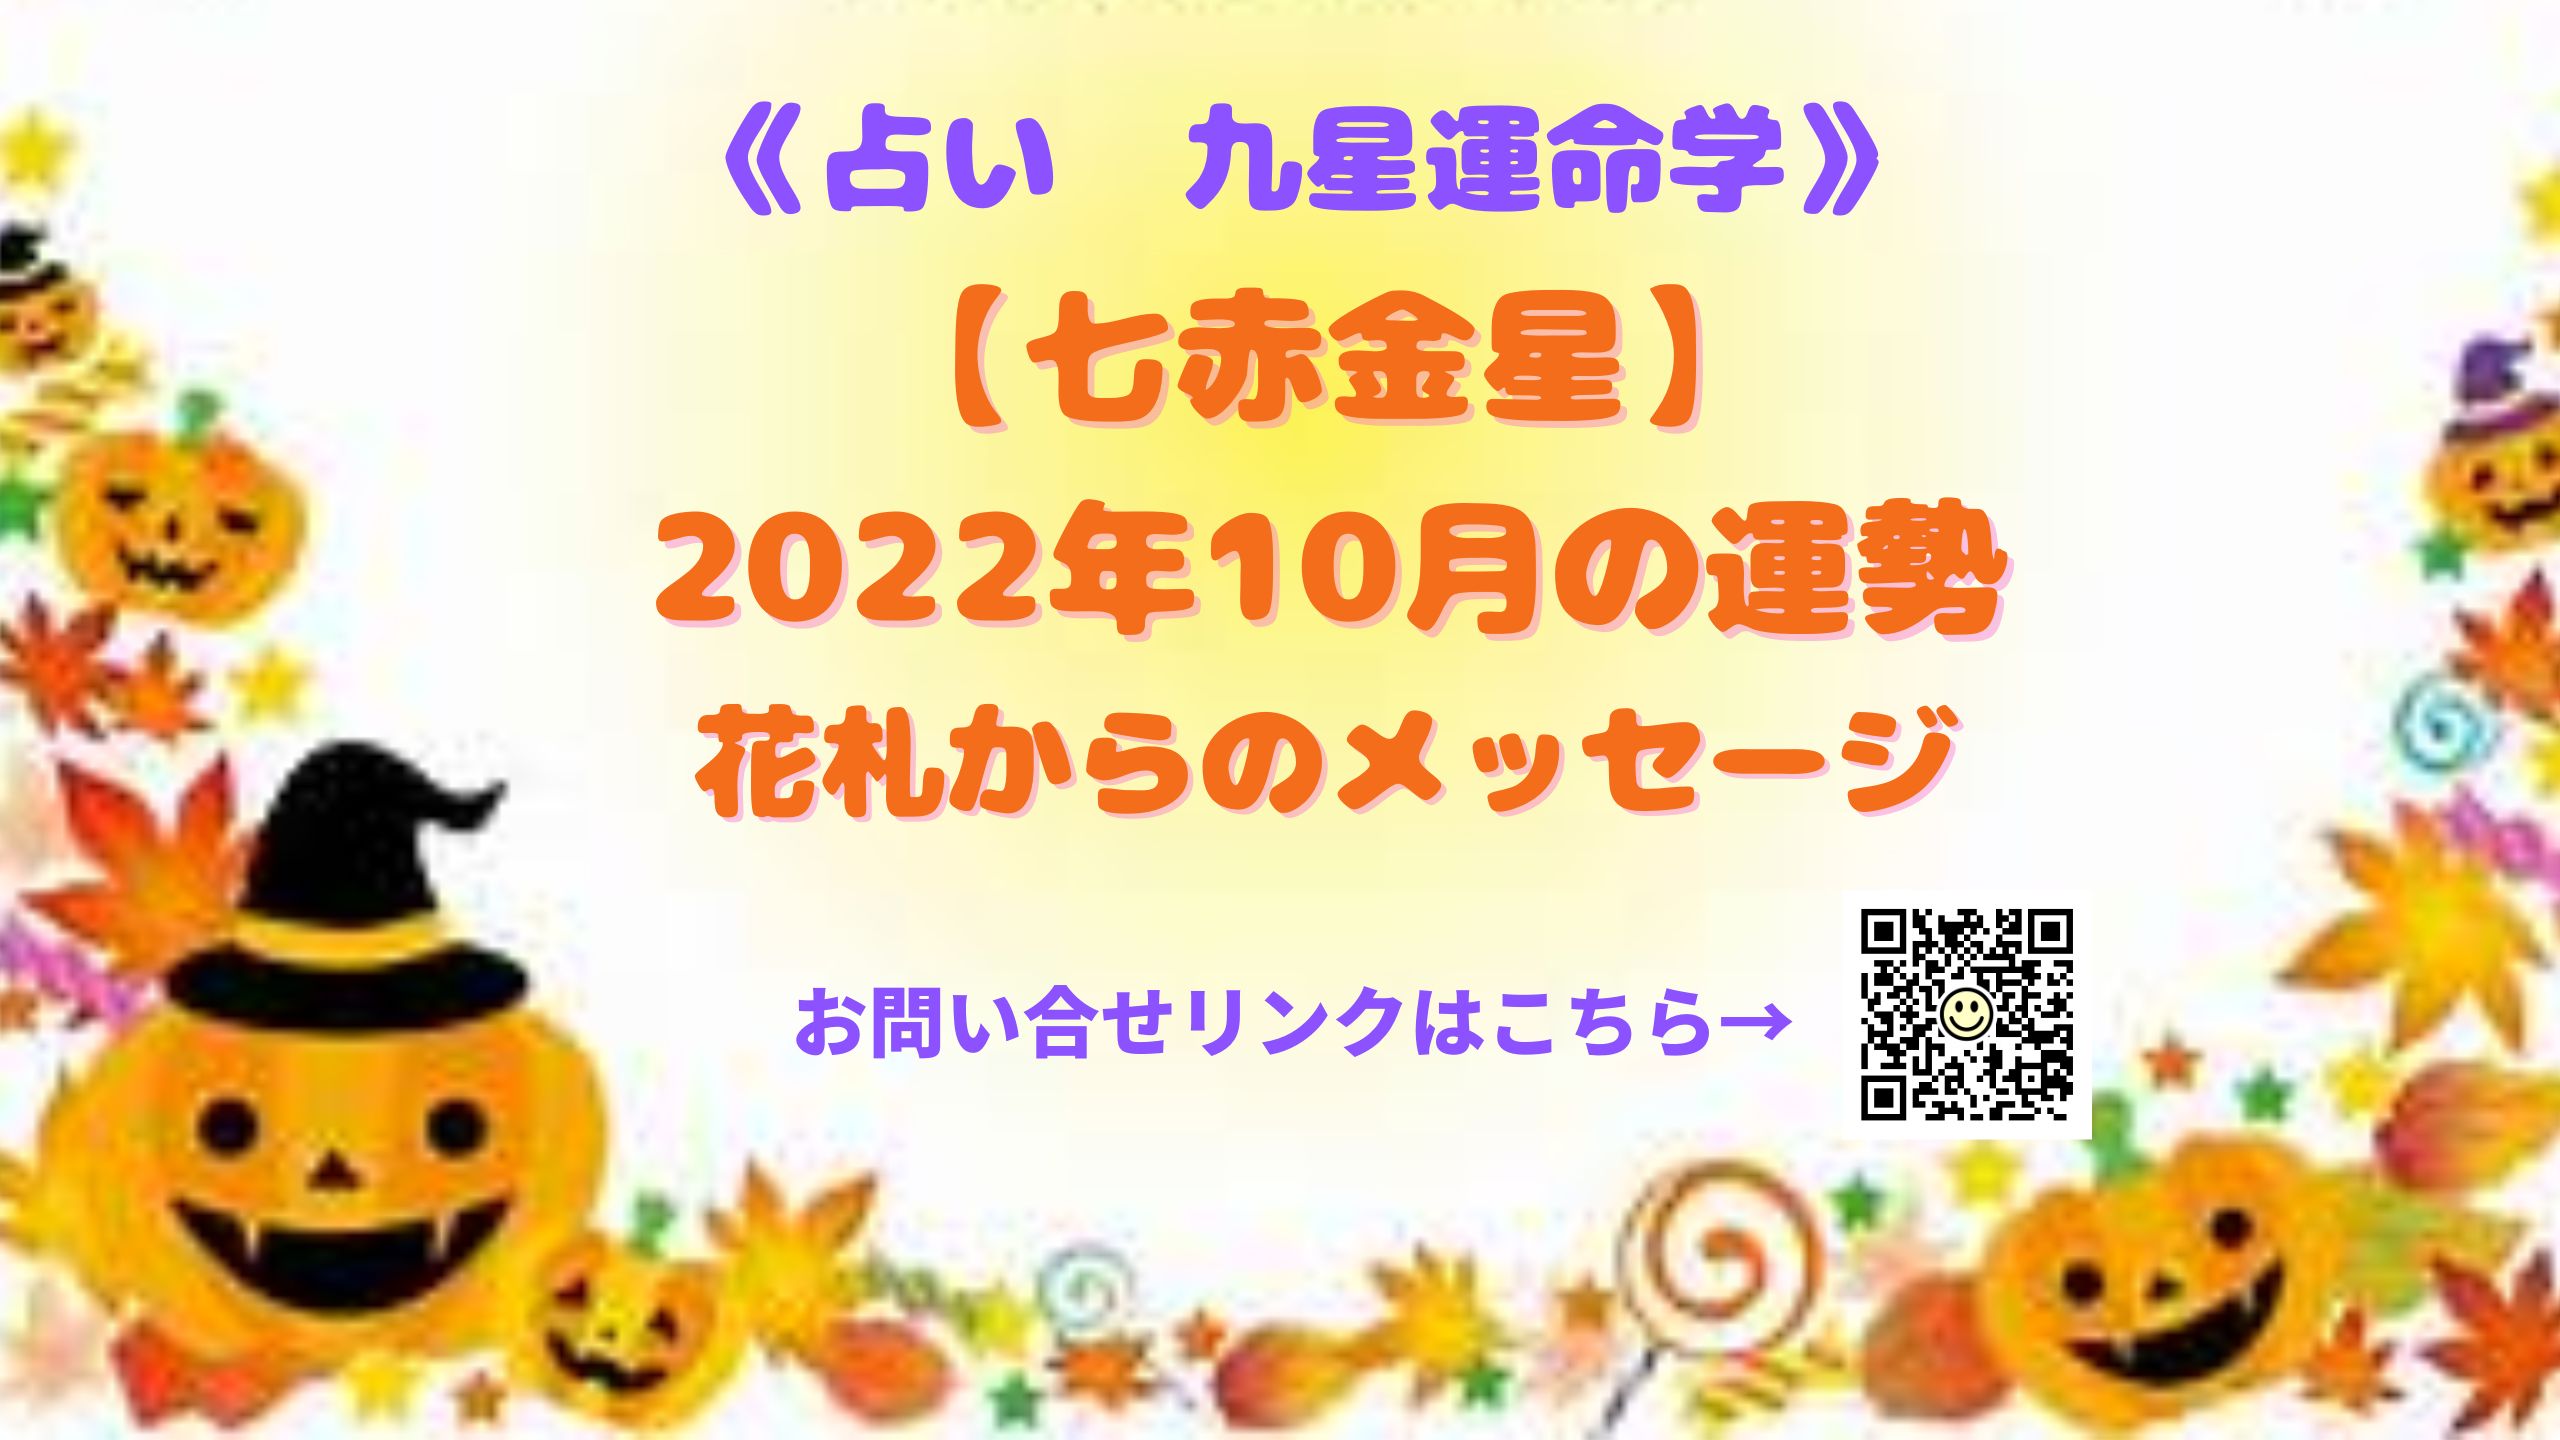 《占い 》【七赤金星】2022年10月の運勢&花札からのメッセージ